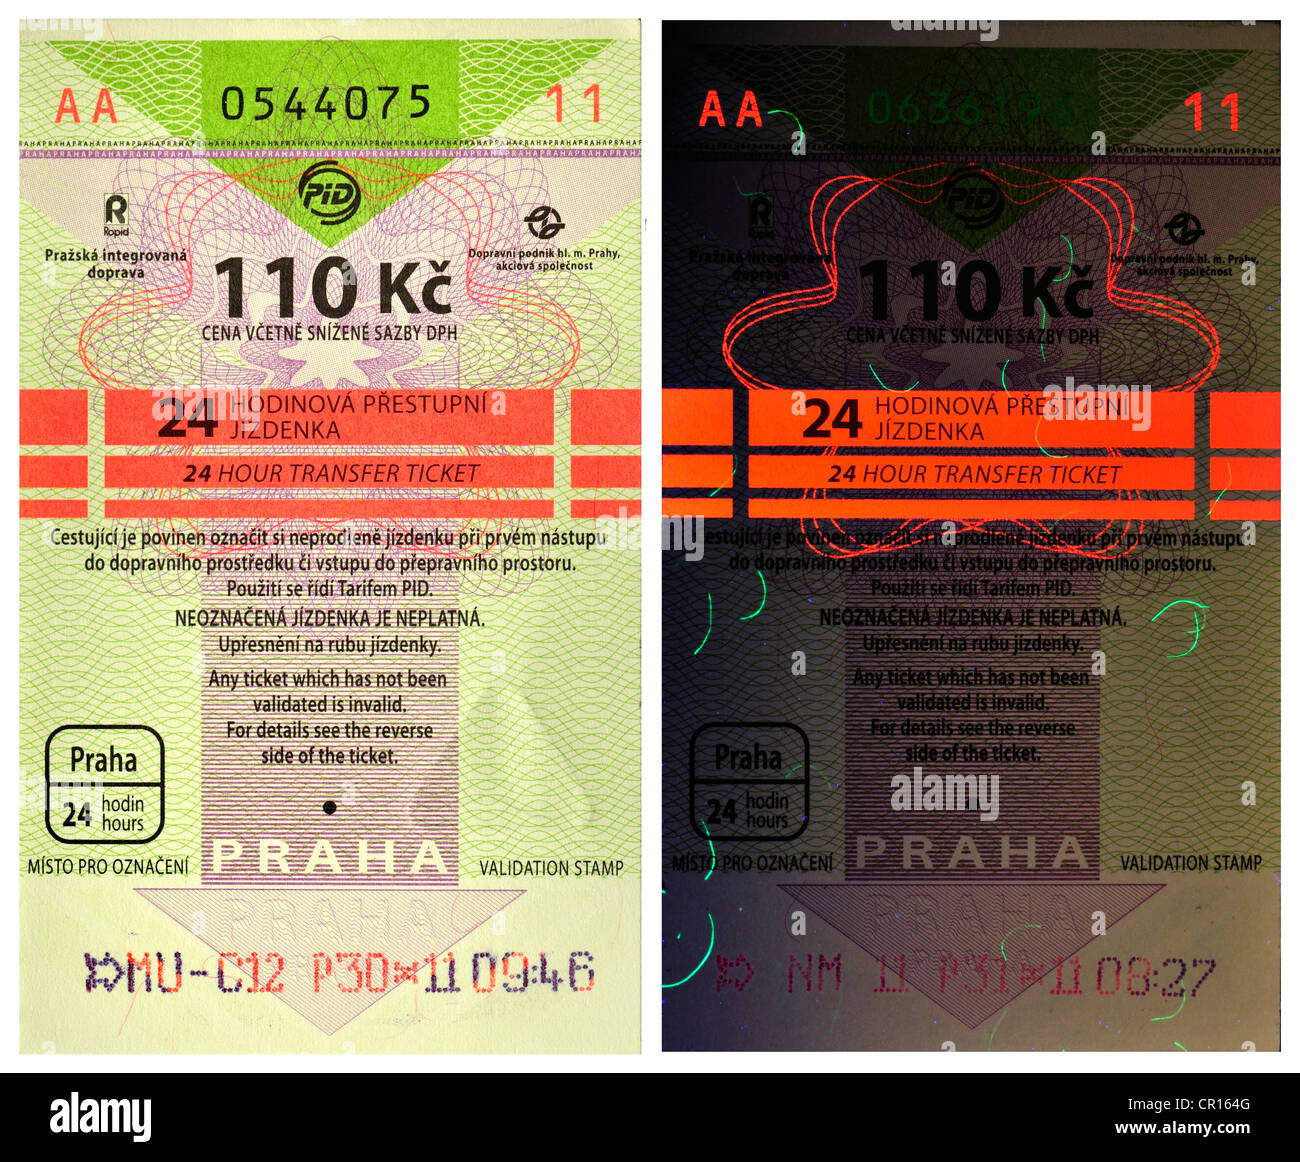 Praga biglietti dei trasporti pubblici - 24hr ticket - 110Kc corone. Le funzioni di sicurezza sotto luce UV (destra) Foto Stock